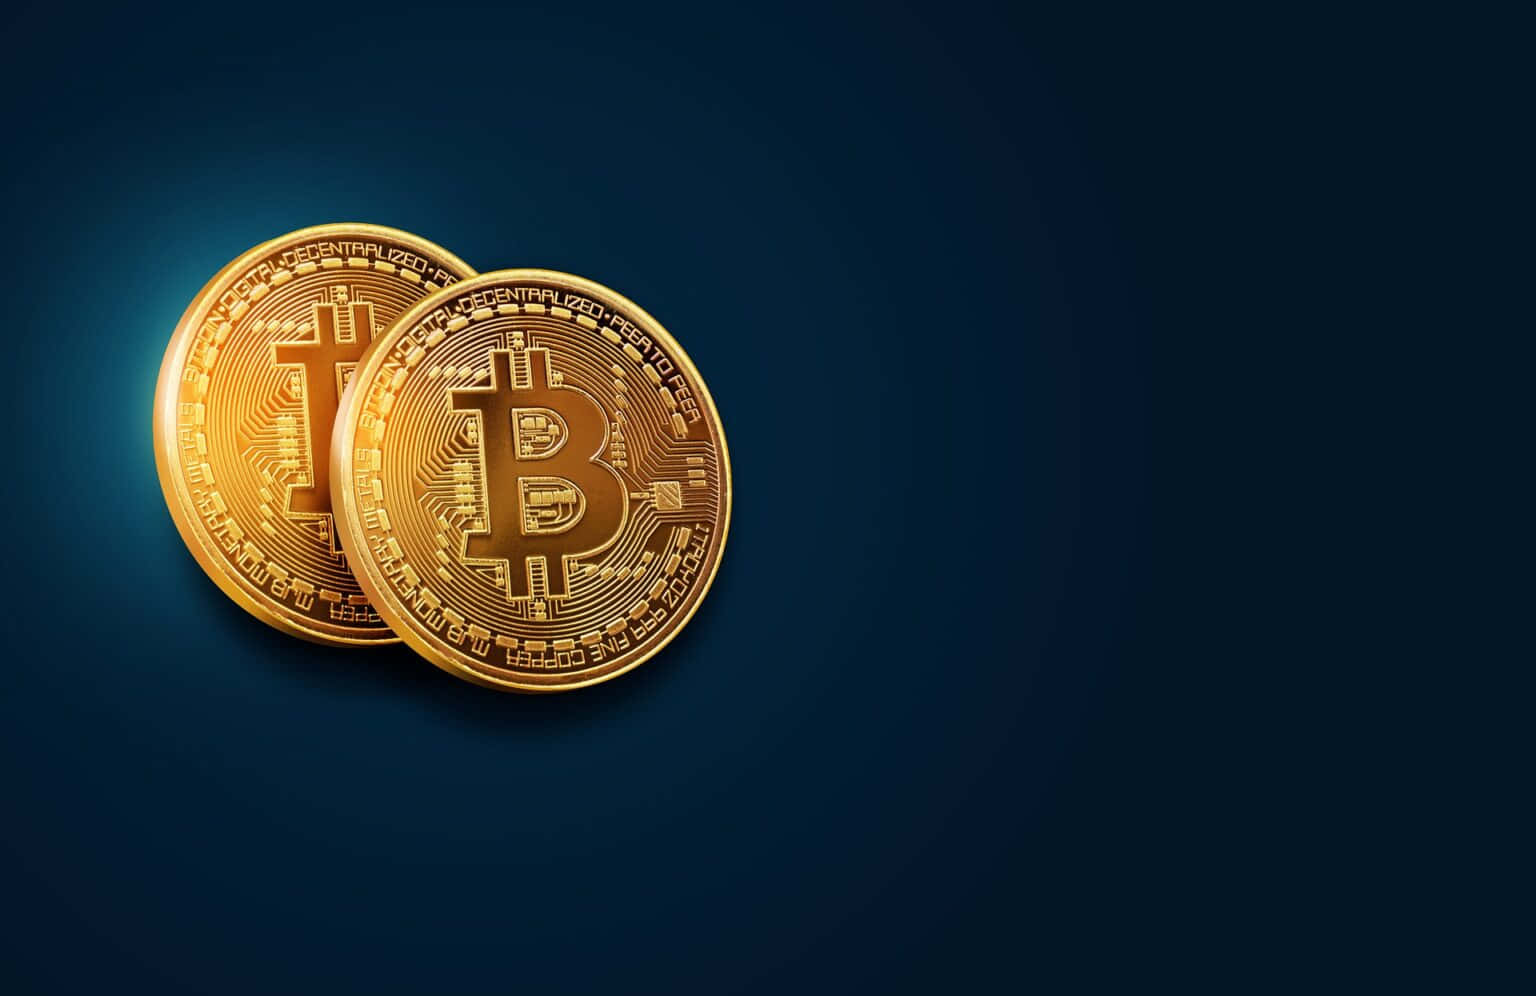 Framtidenför Finansiella Transaktioner - Bitcoin